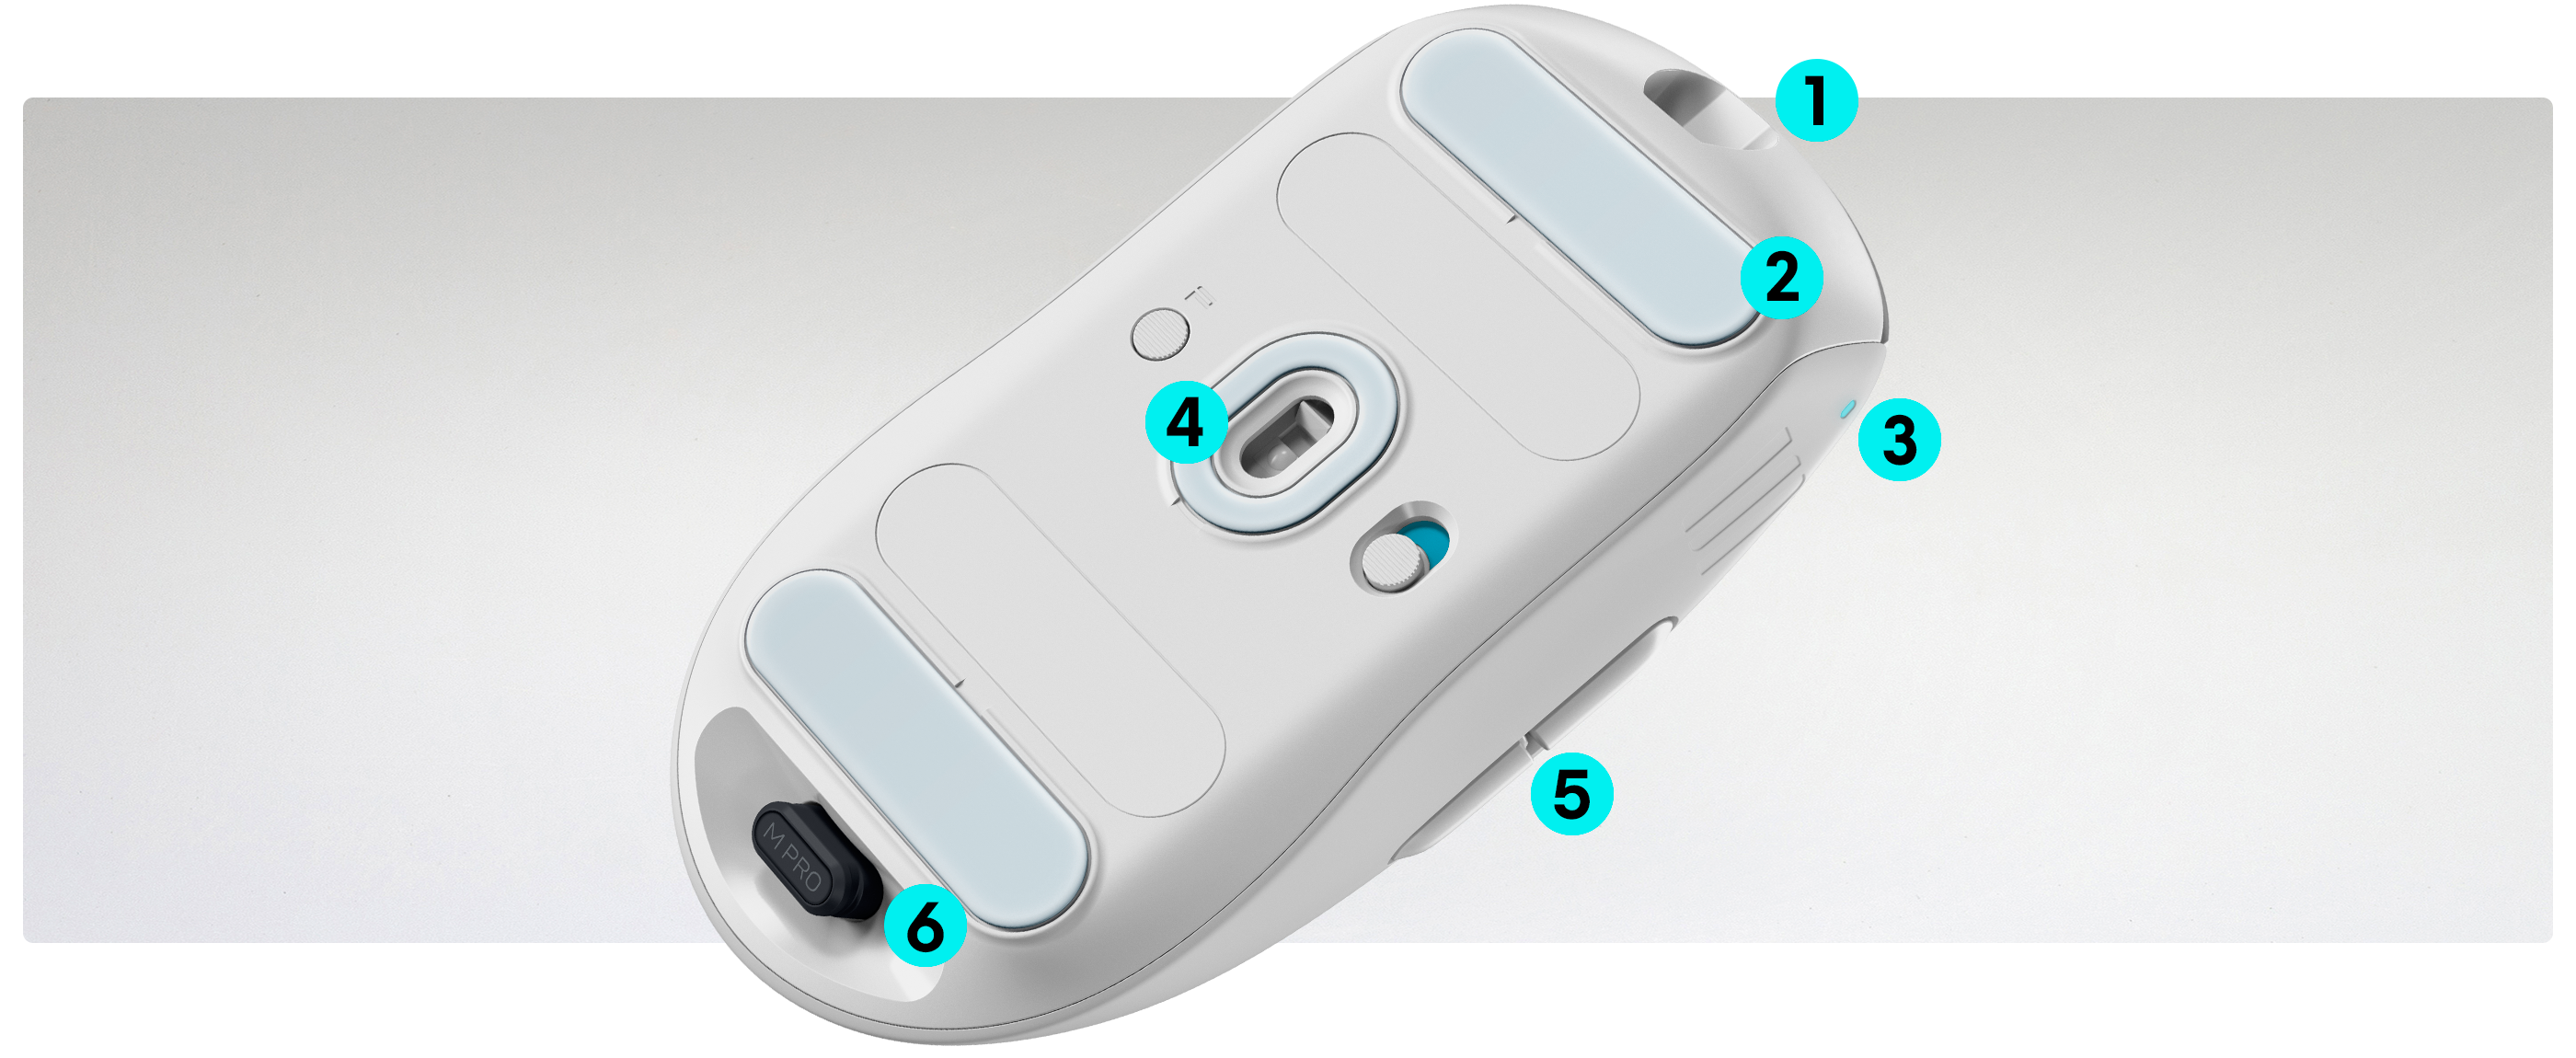 Mouse senza fili per il gaming Dell Alienware Pro con numeri da 1 a 6 che indicano le funzioni del prodotto.